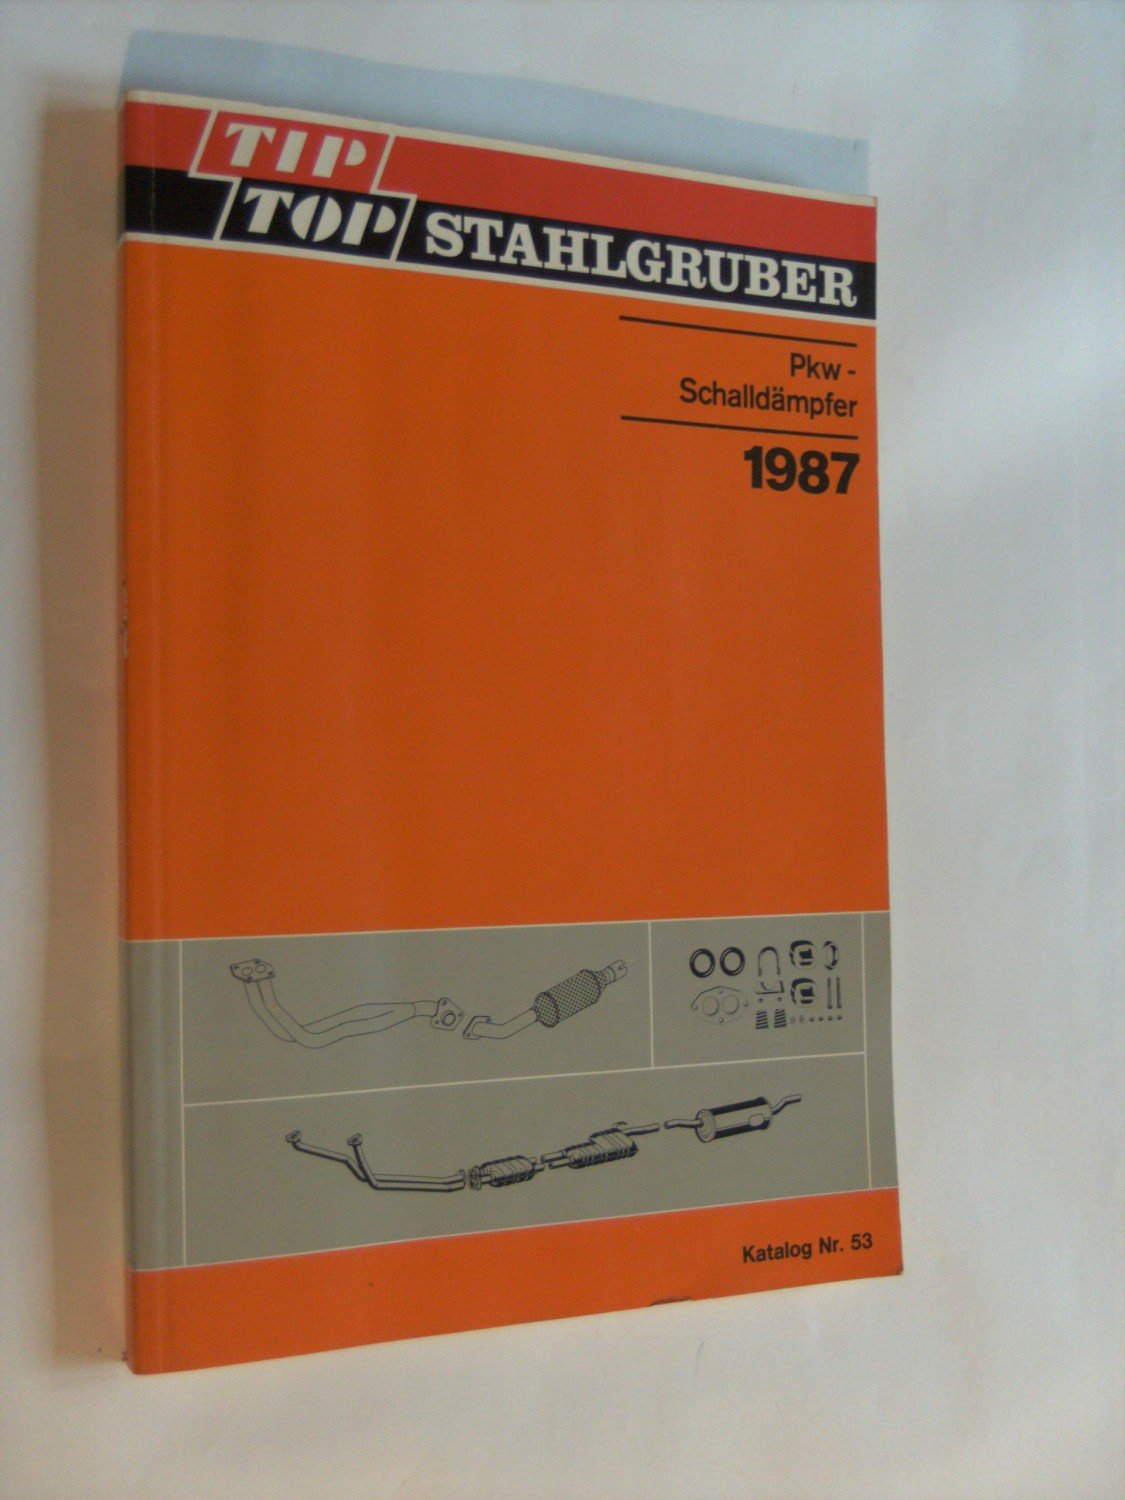 Stahlgruber Pkw-Schalldämpfer 1987 Katalog Nr.“ (Otto Gruber GmbH ) Buch gebraucht kaufen – A02iZfMa01ZZr